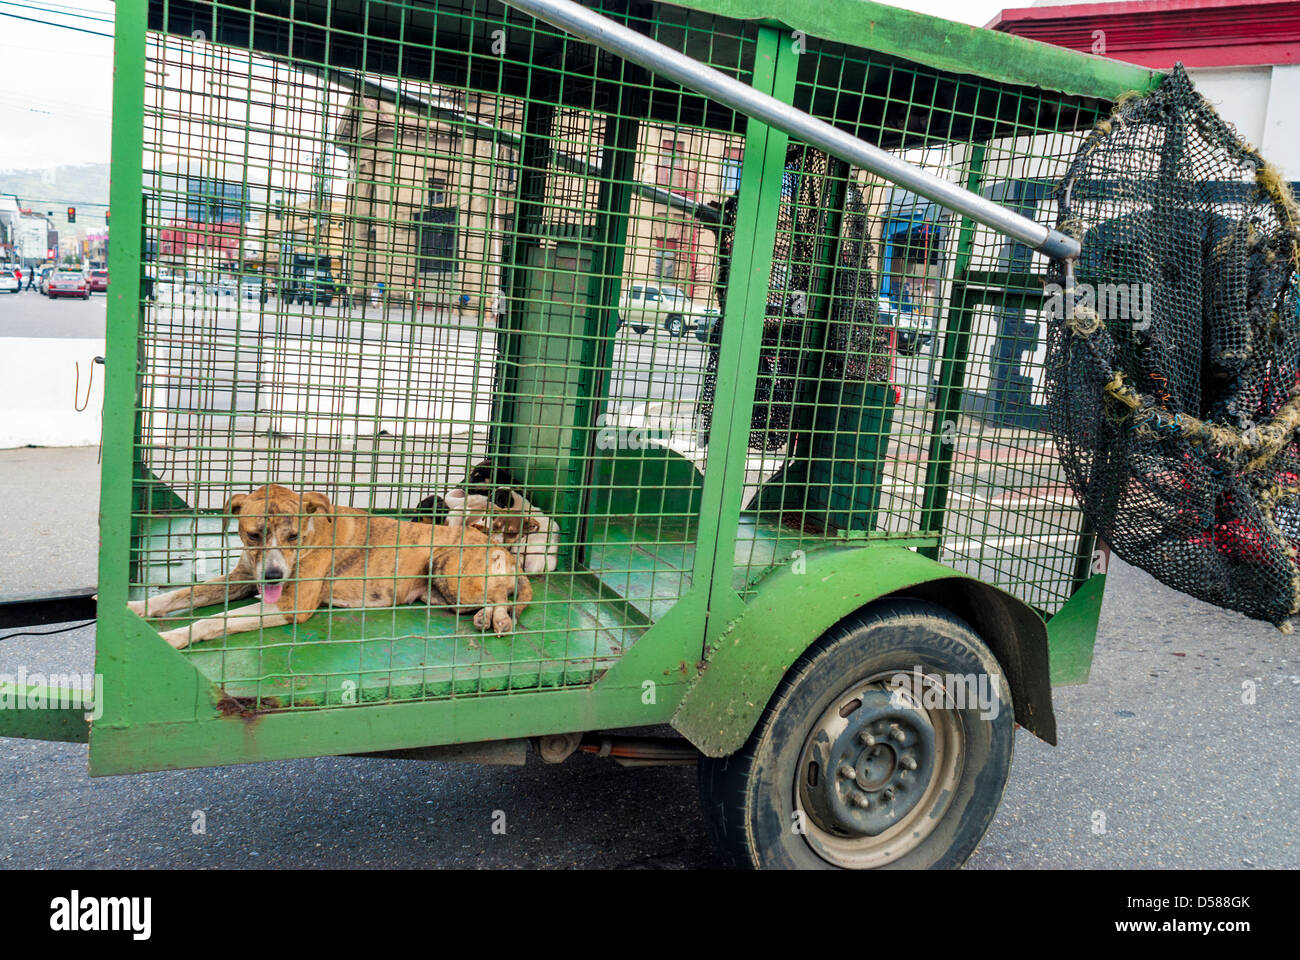 Un chien catcher cage/moustiquaires et de l'attraper ,sur route Wrightson, Port of Spain, Trinidad Banque D'Images